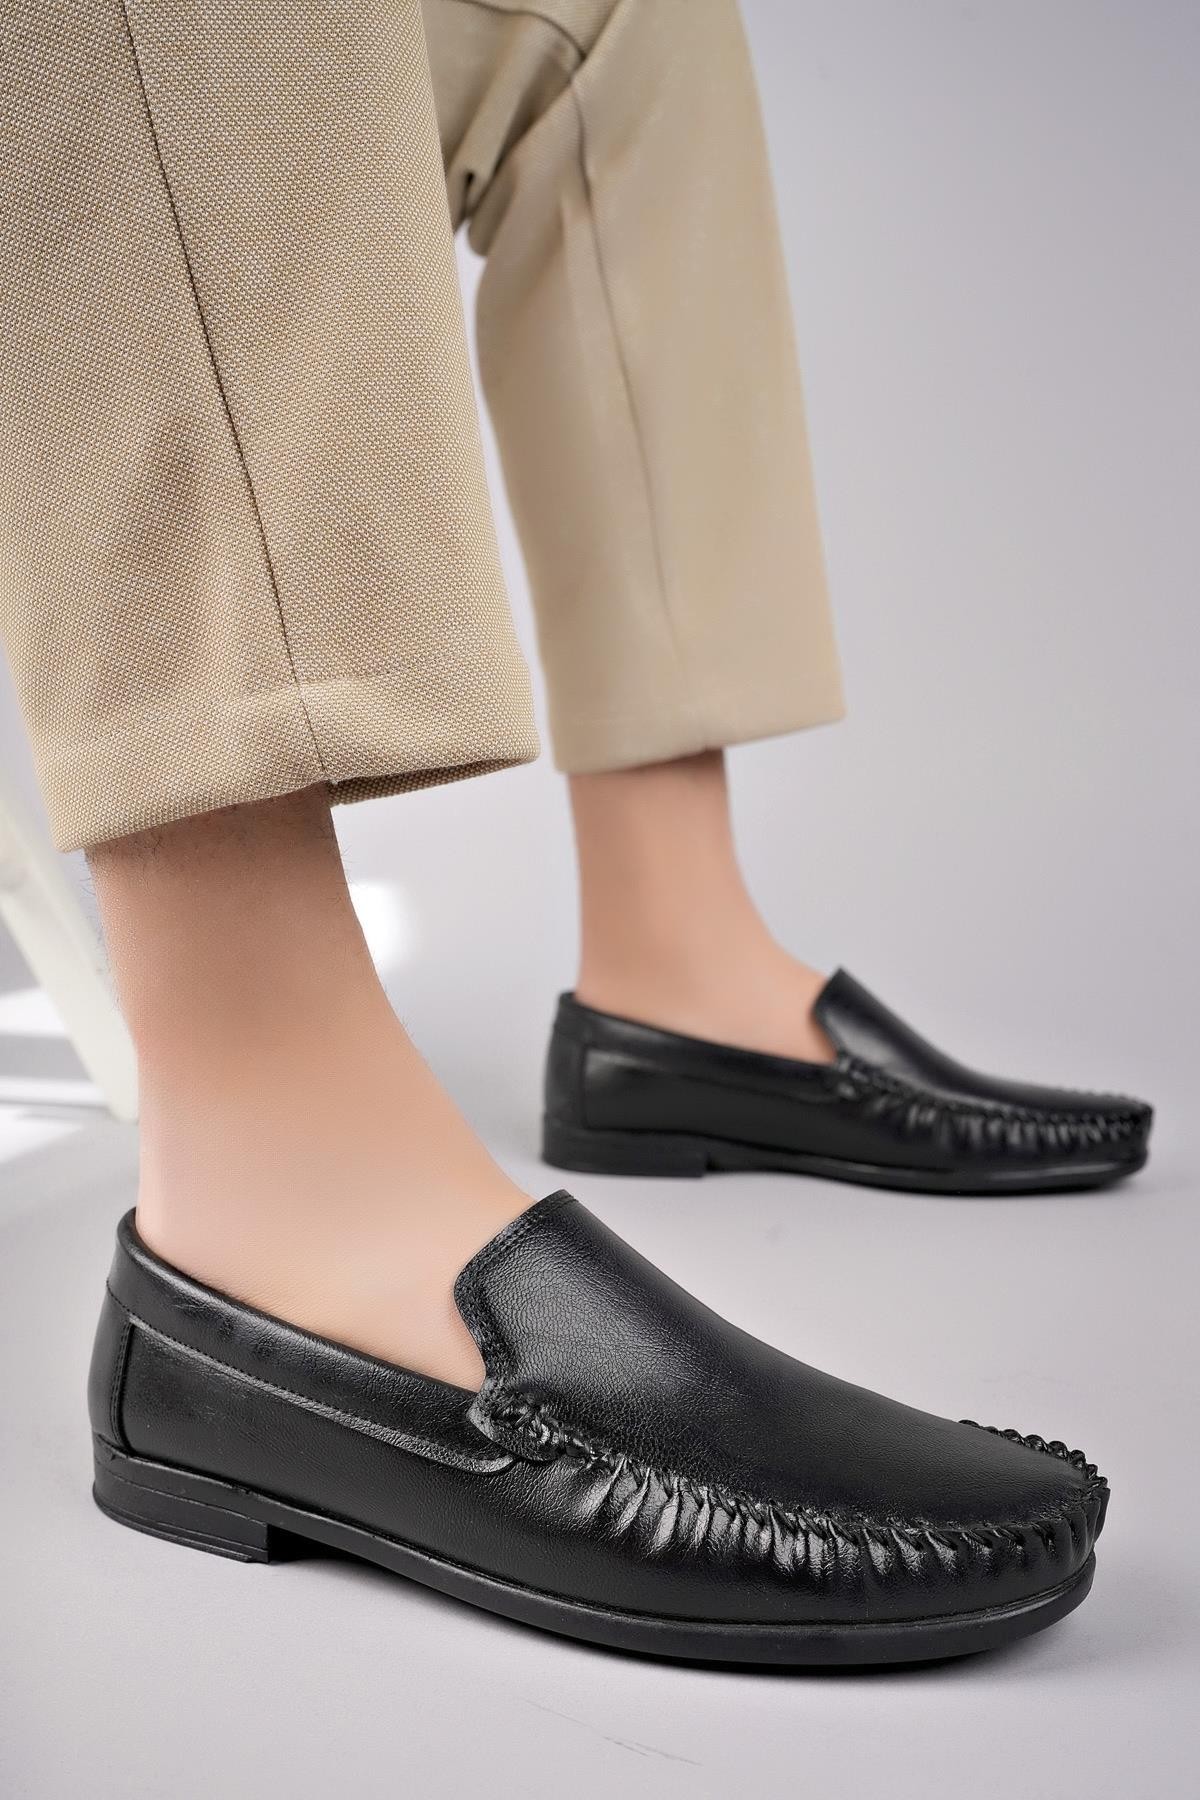 Muggo MARK Garantili Erkek Günlük Klasik Casual Rahat Ortopedik Ayakkabı - SİYAH